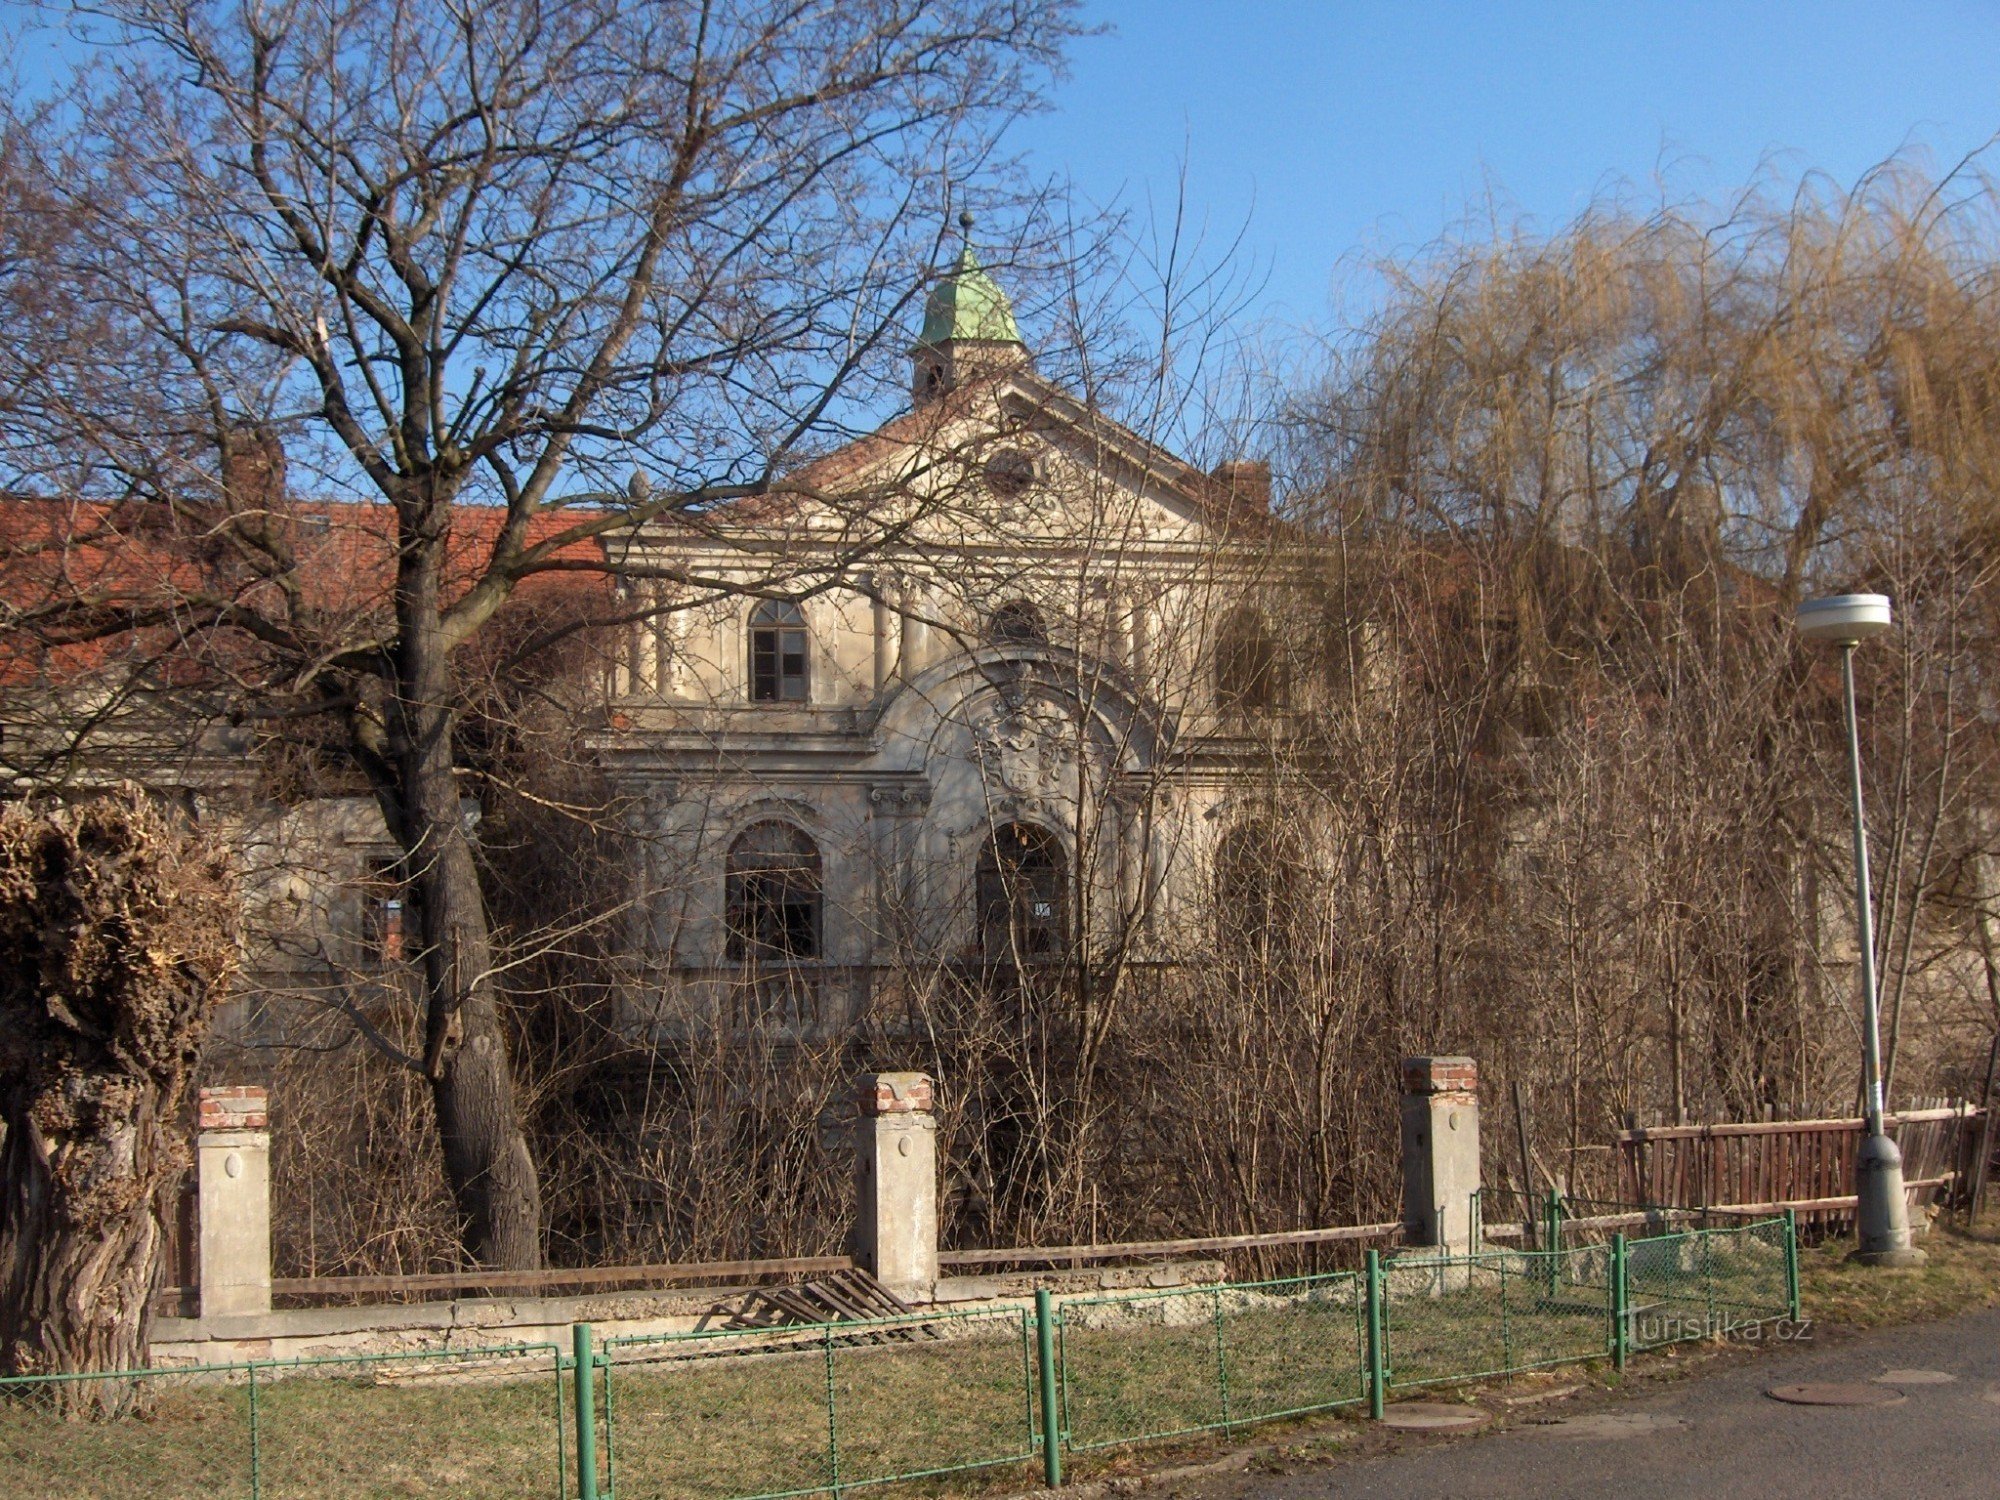 Dvorac Poláky.